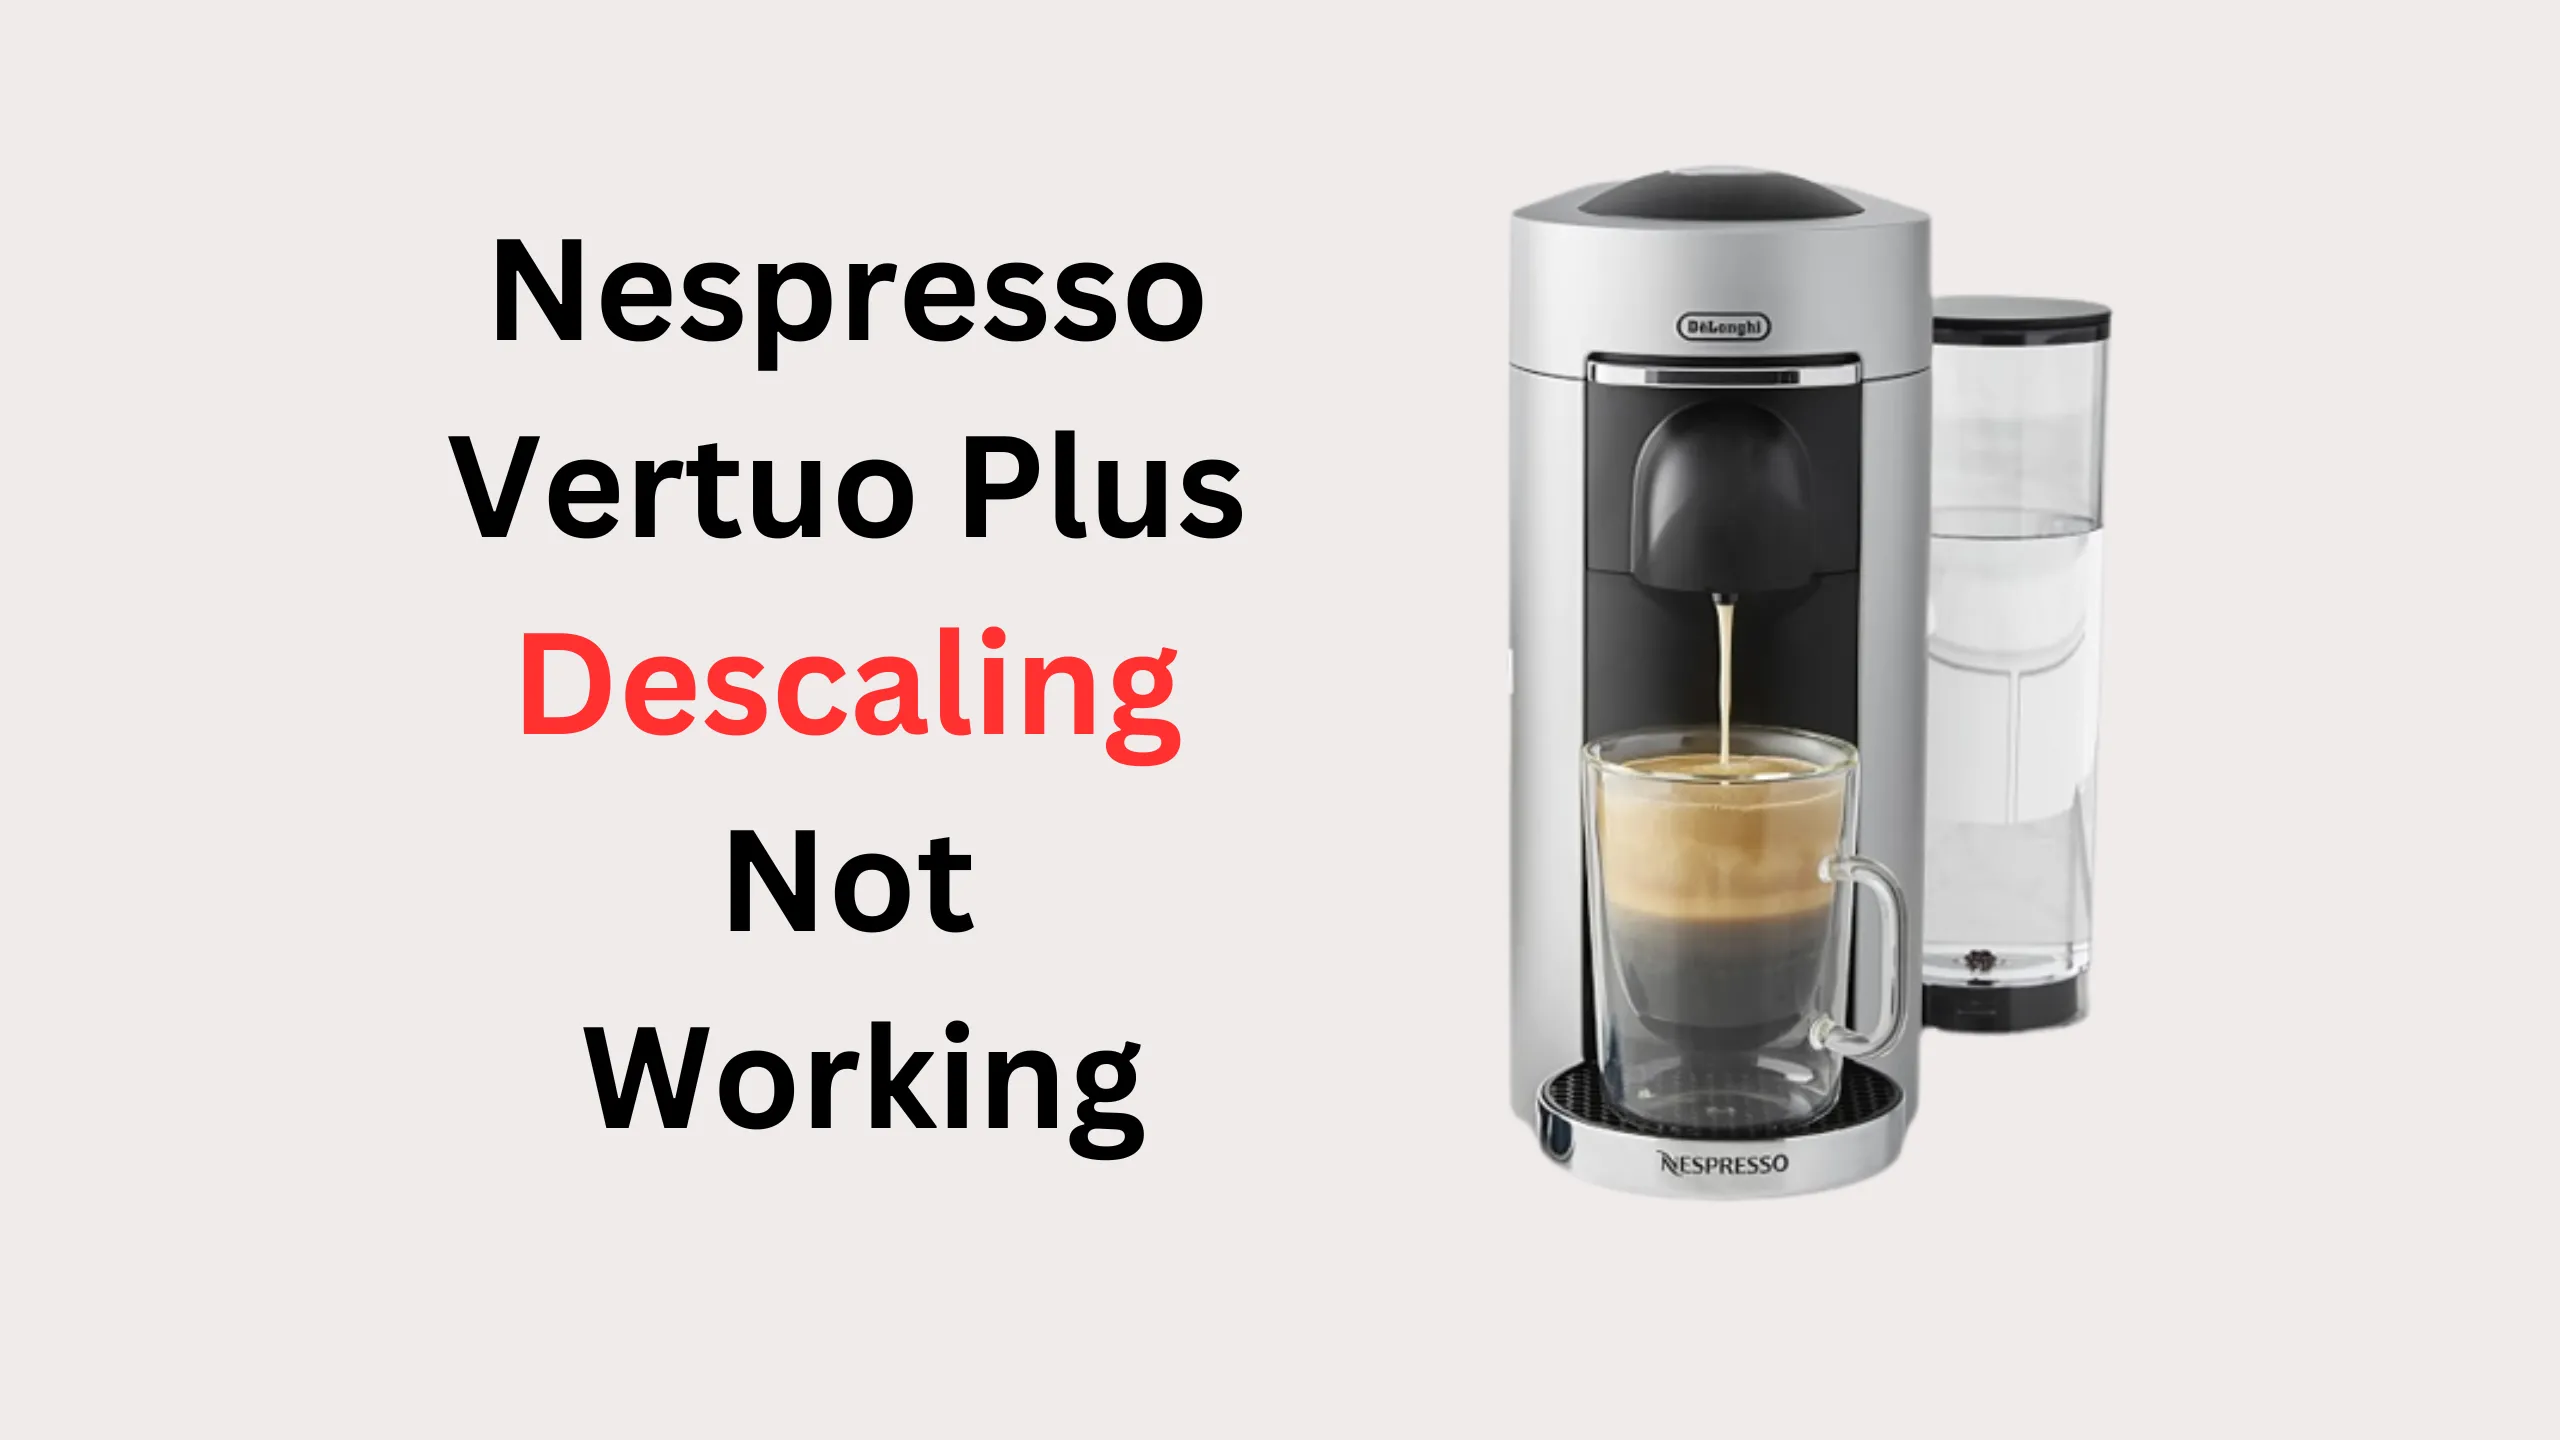 nespresso vertuo plus descaling is not working